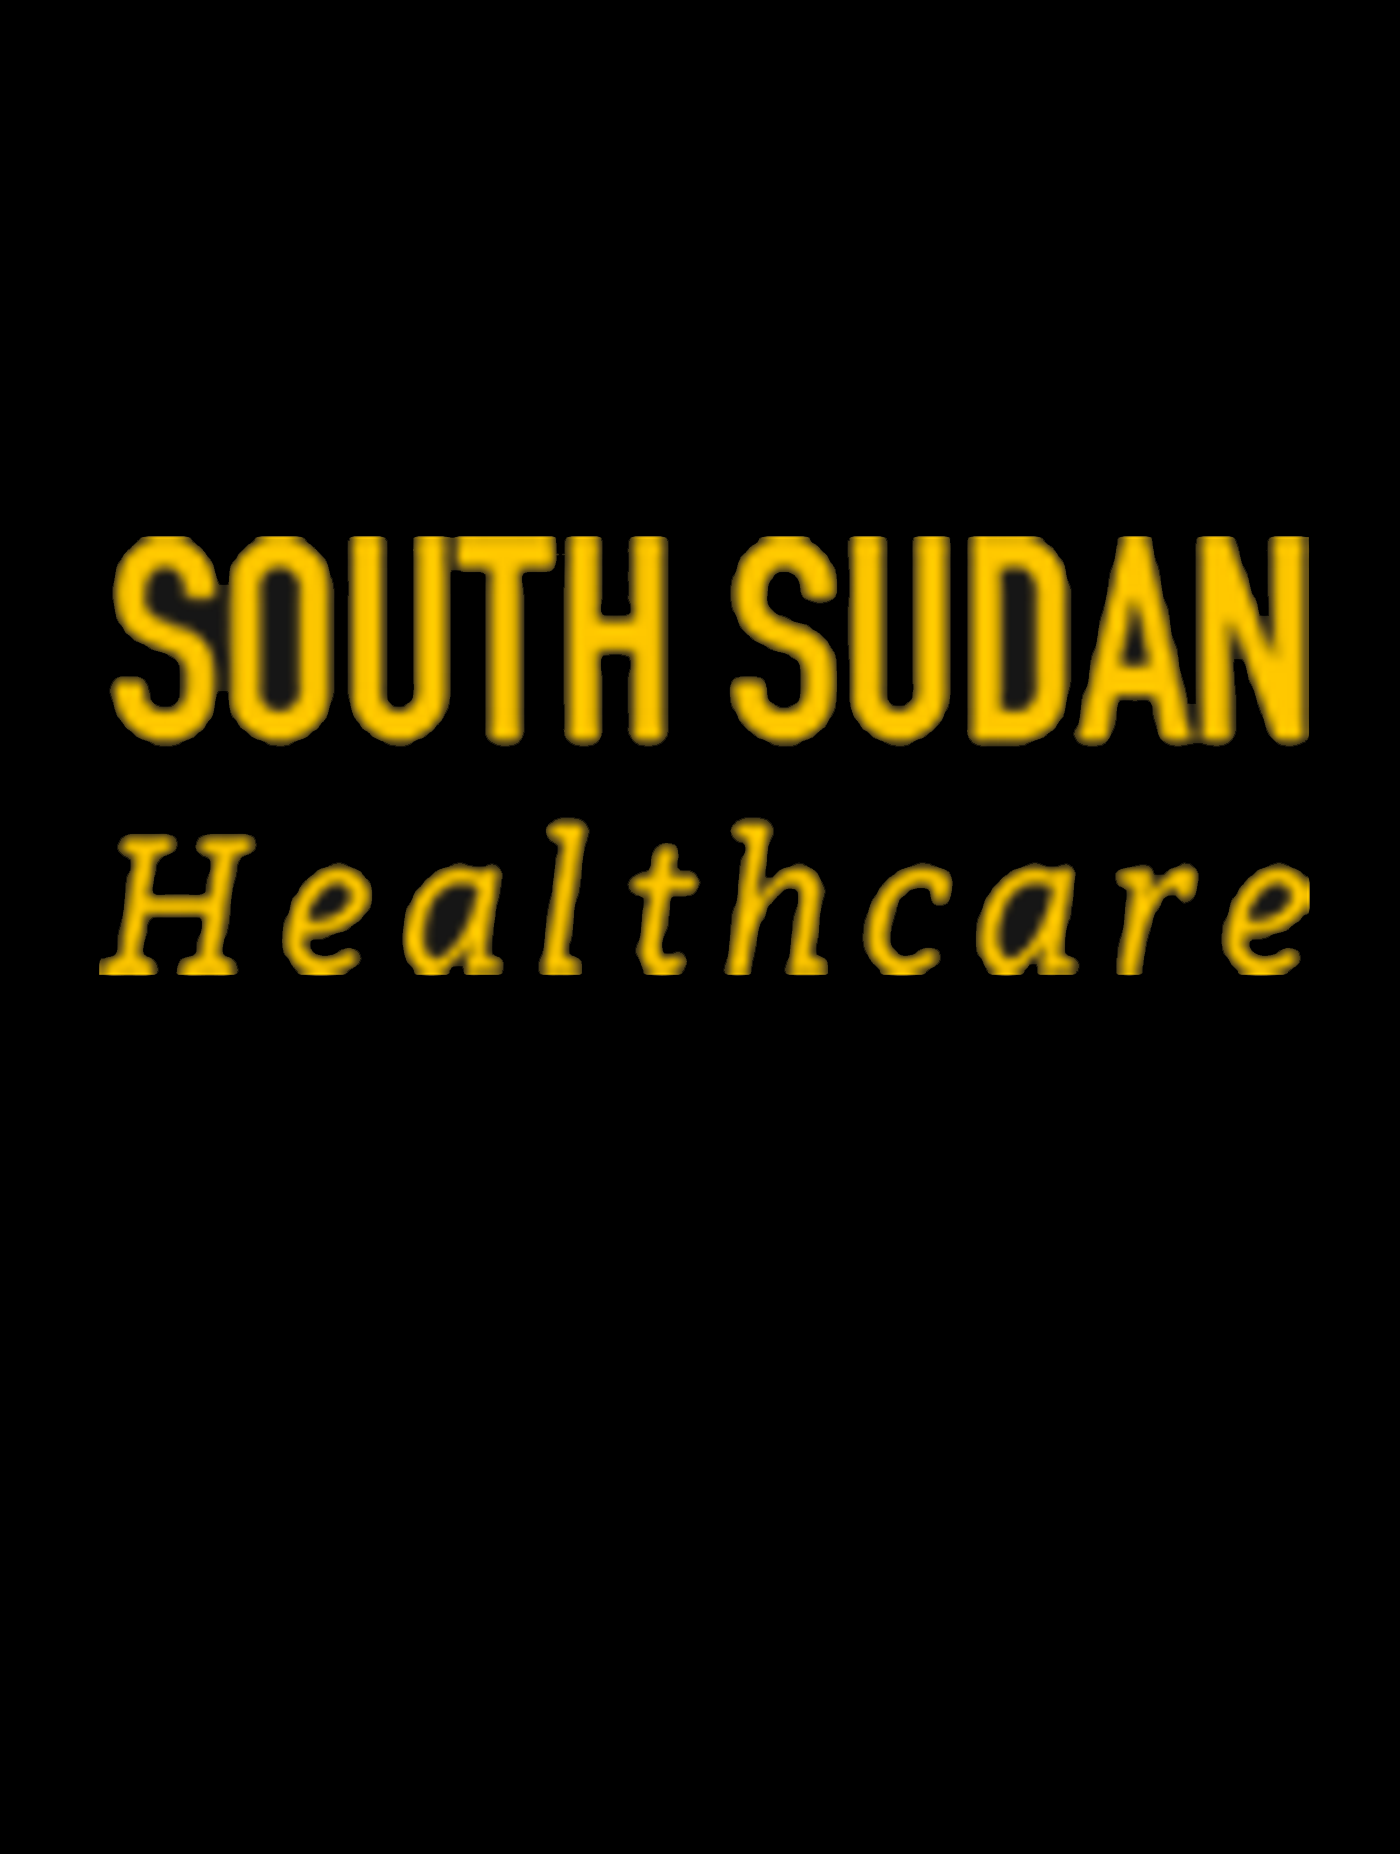 South Sudan Healthcare